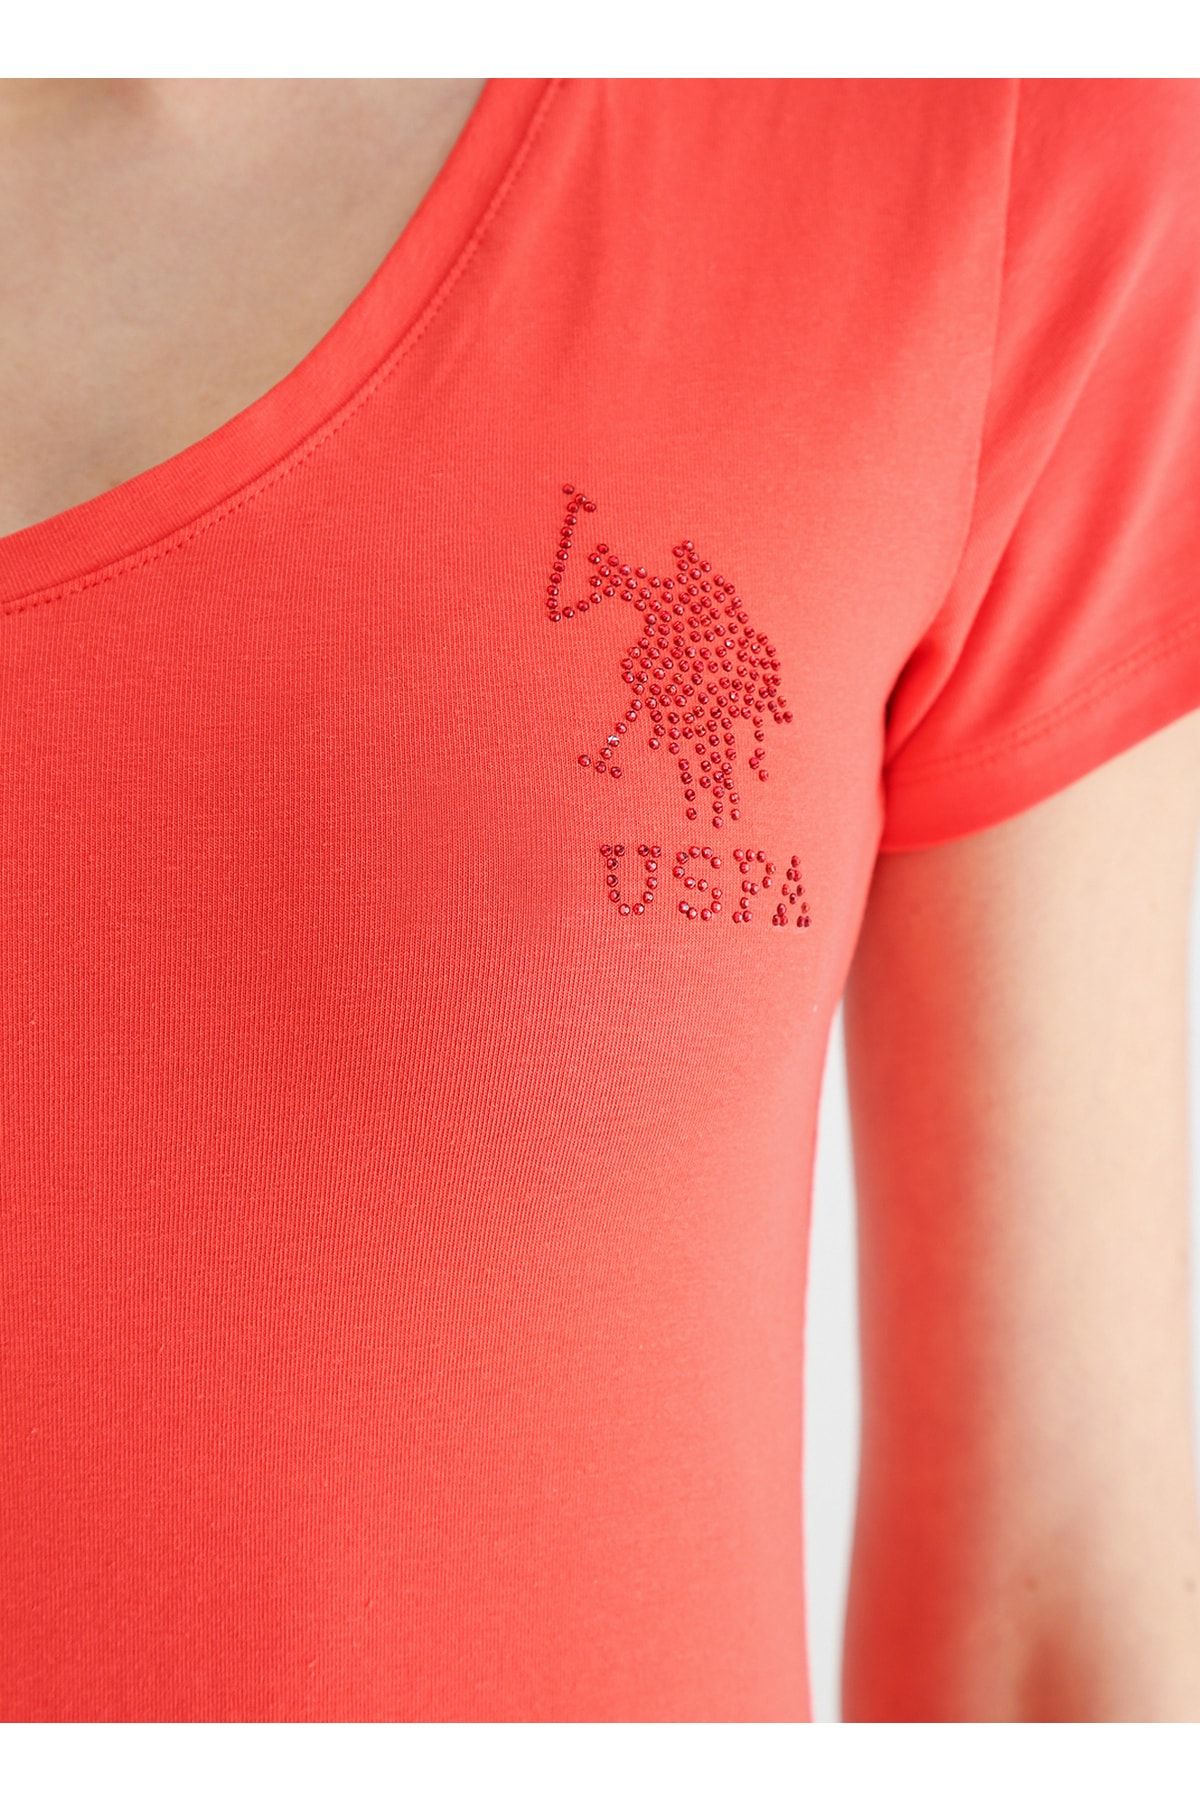 U.S. Polo Assn. تی شرت، Xs، قرمز